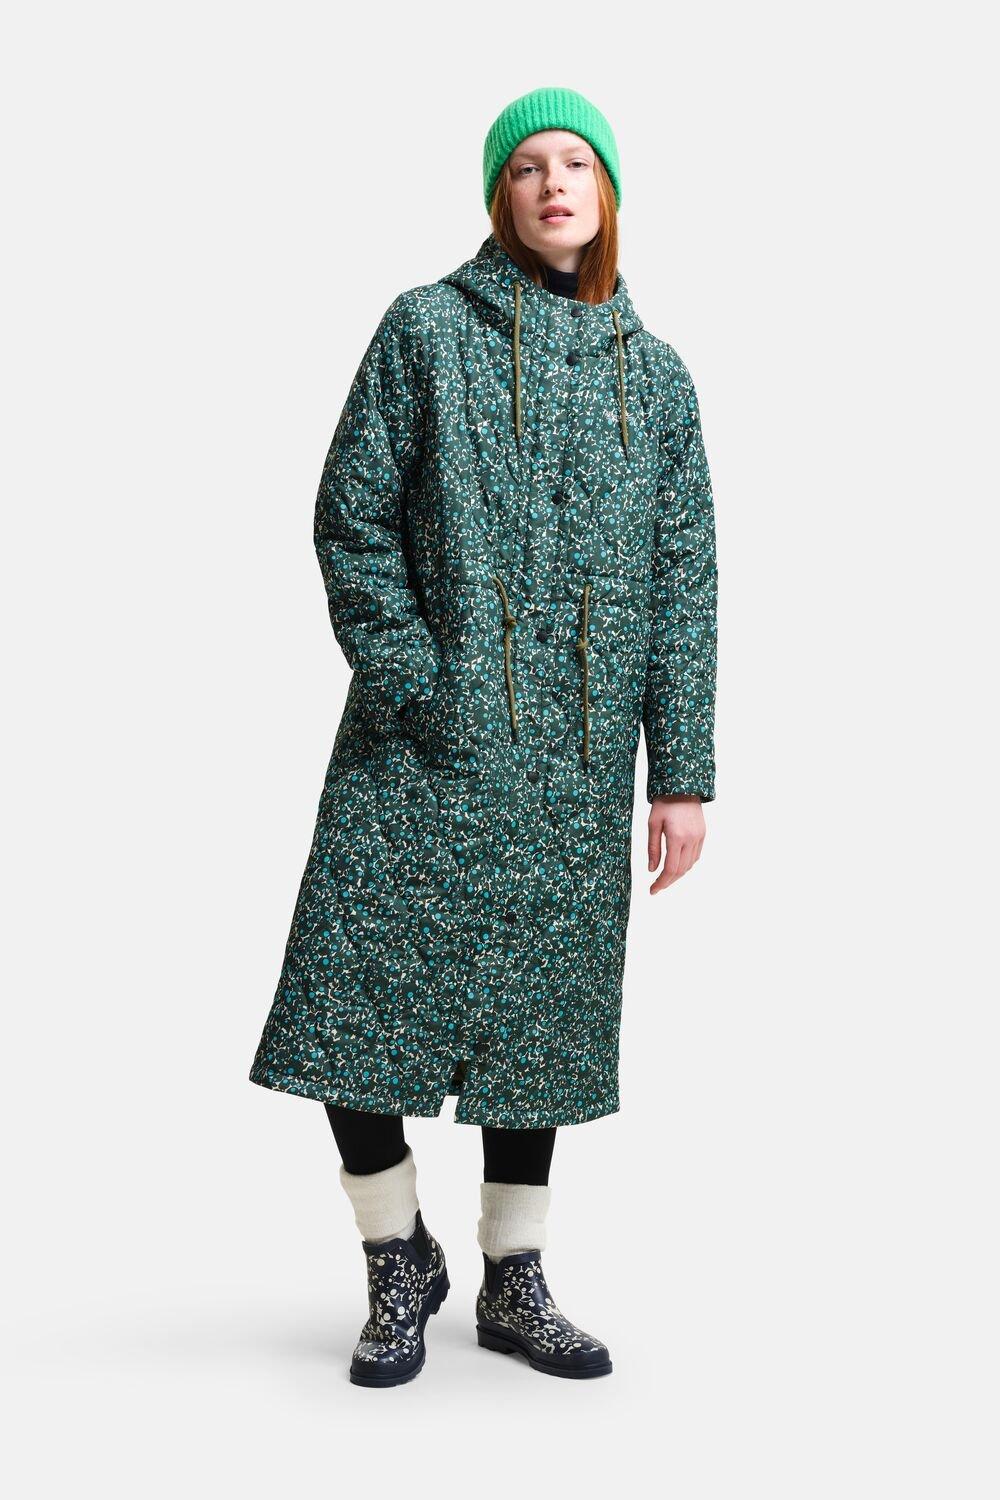 Удлиненная стеганая куртка Orla Kiely Regatta, зеленый длинное флисовое пальто из смешанной ткани женское backcountry цвет brown sugar tawny orange fired brick